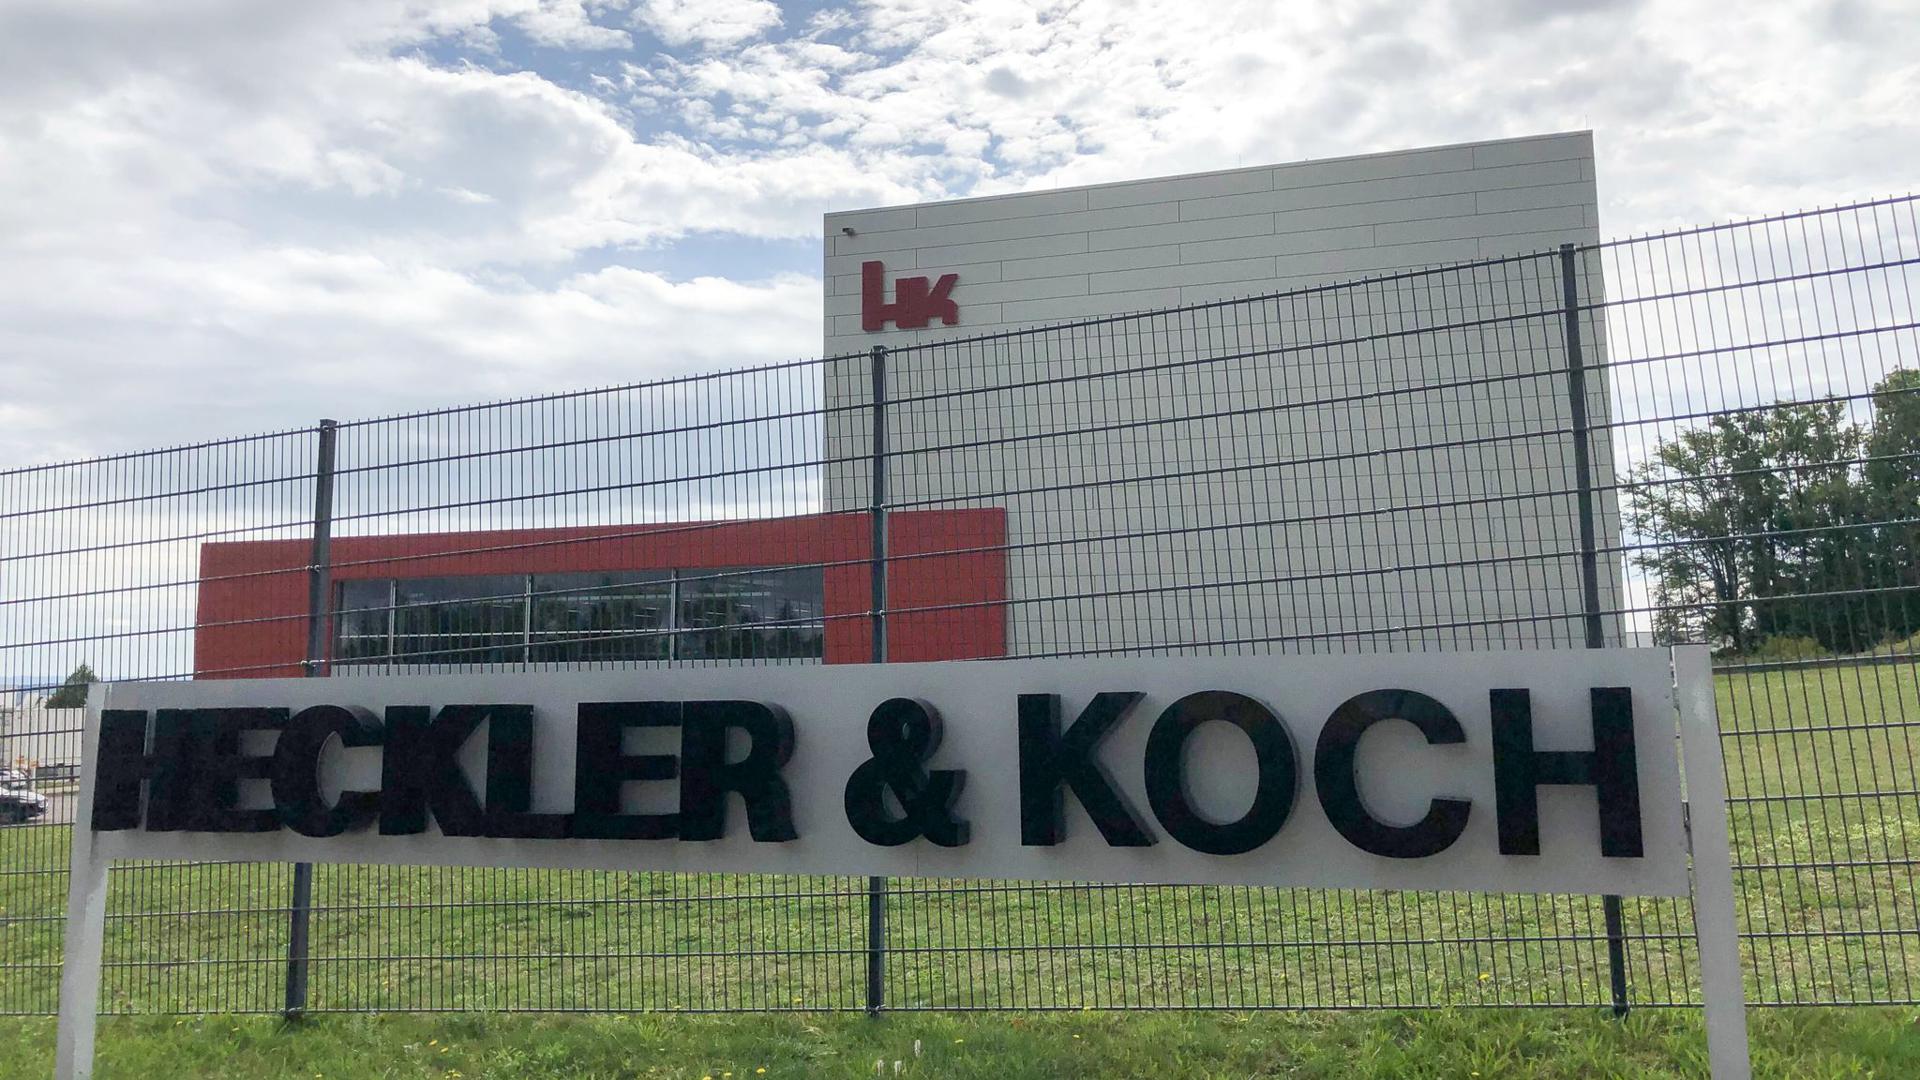 Heckler & Koch wurde erst 1949 gegründet. Mit der Frage, was ihre Gründer davor getan hatten, beschäftigte sich die Firma jahrzehntelang nicht.